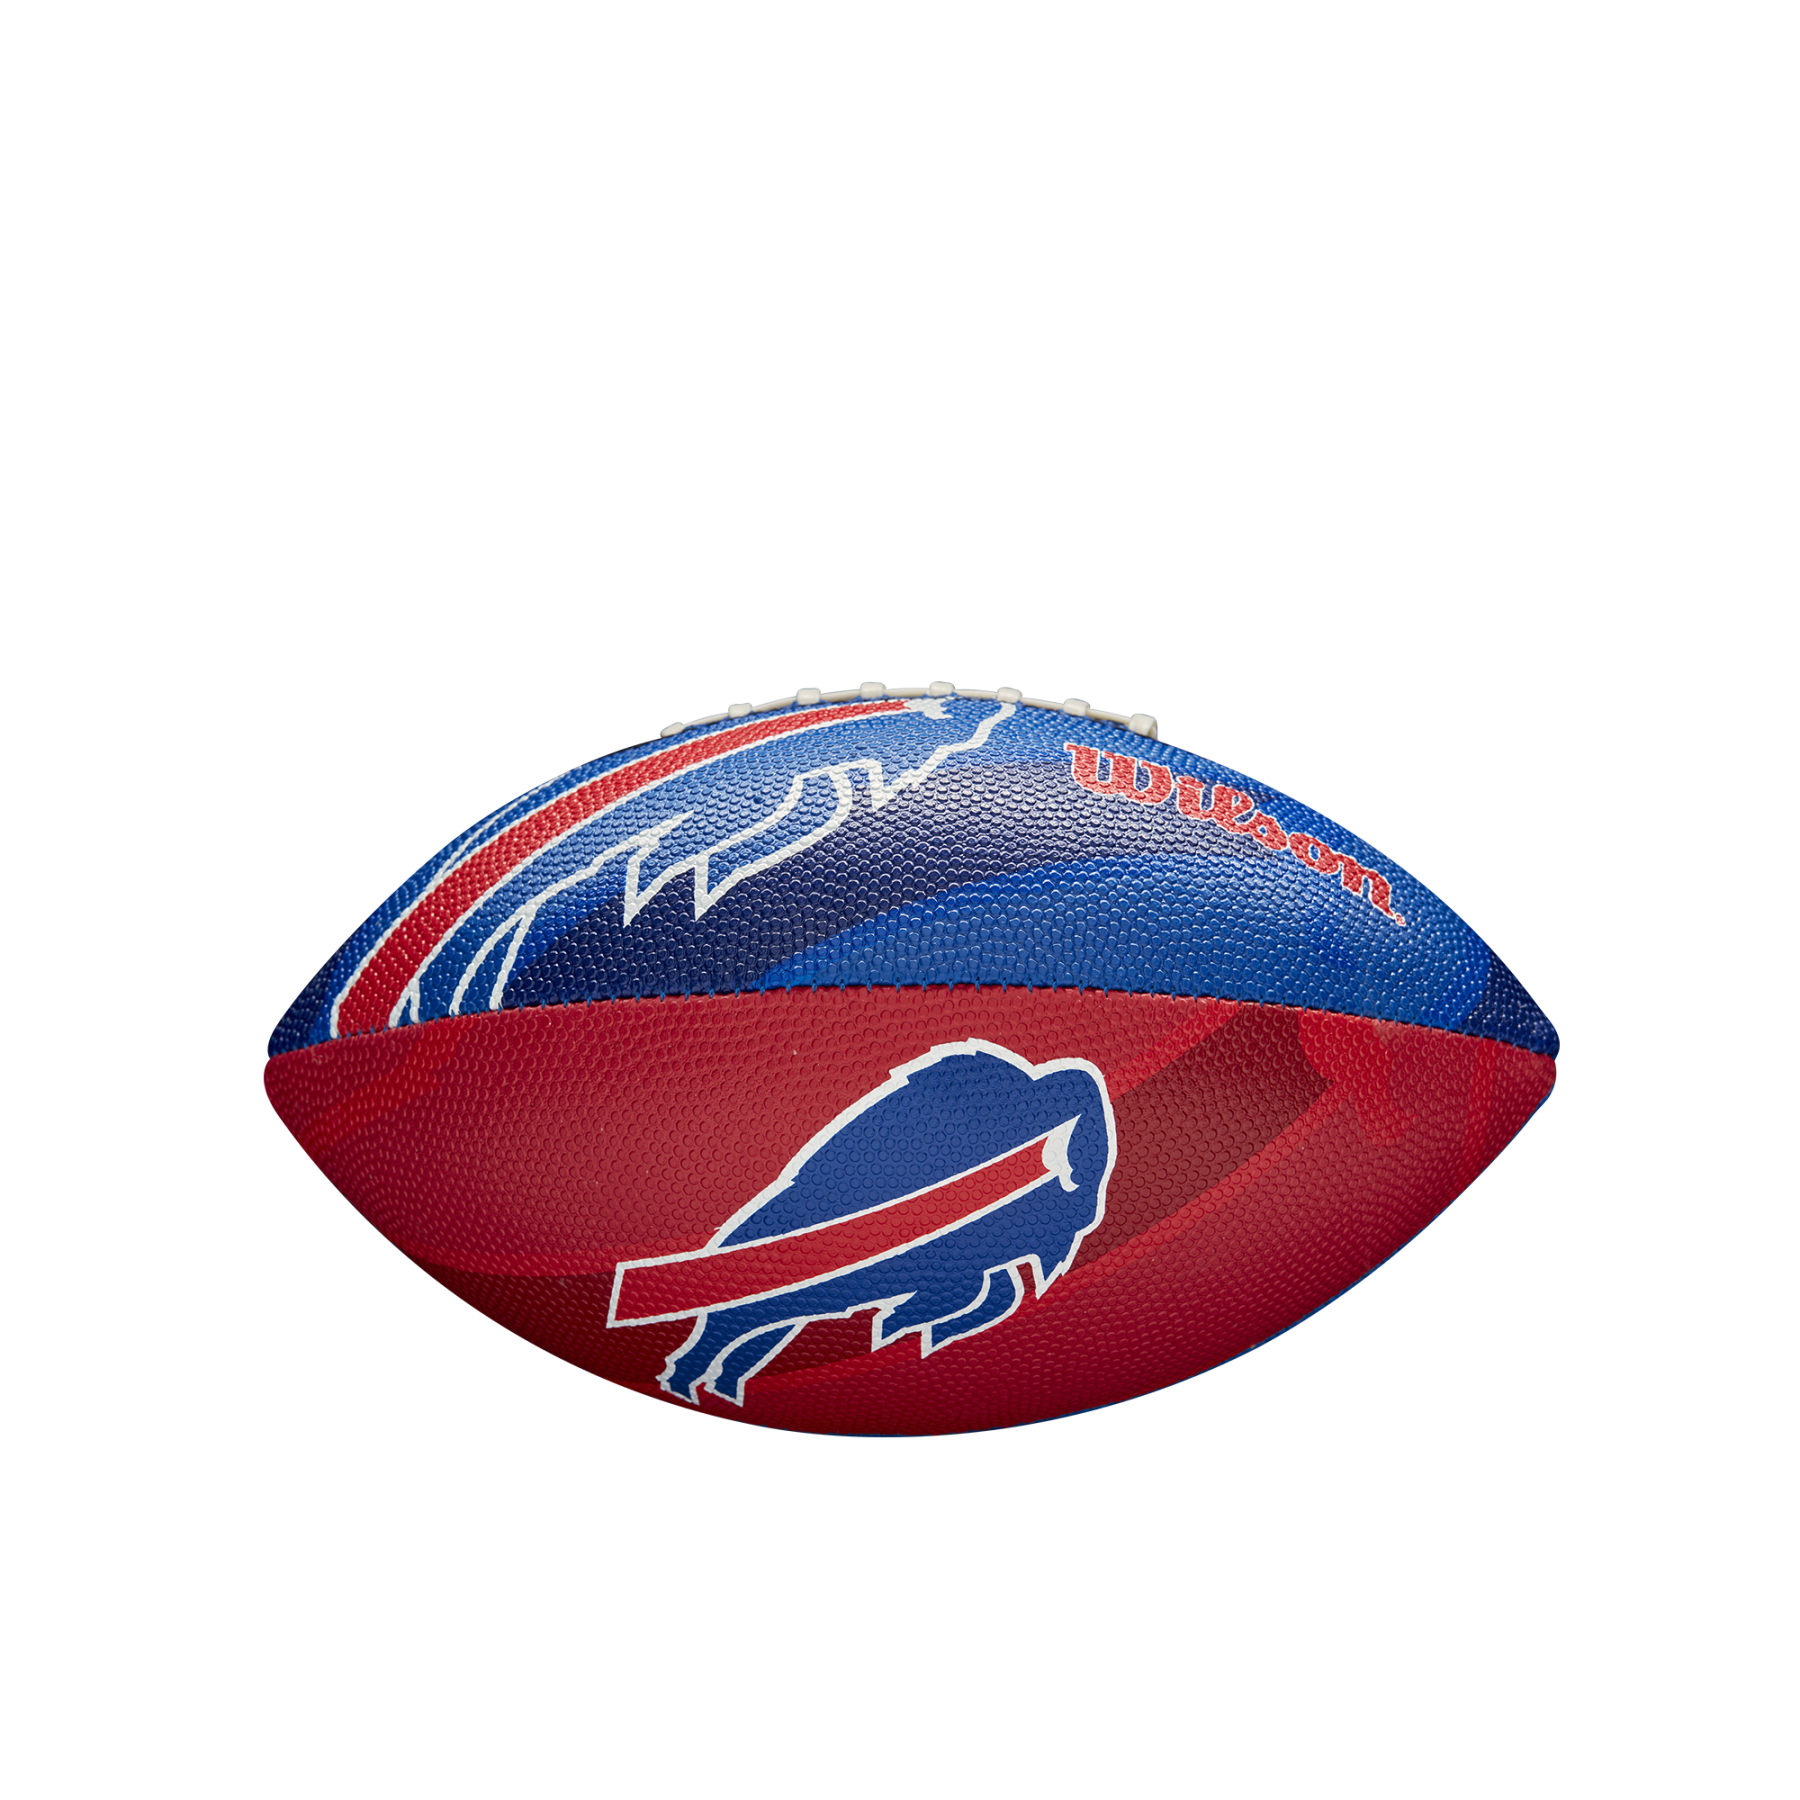 Ballon enfant Wilson Bills NFL Logo